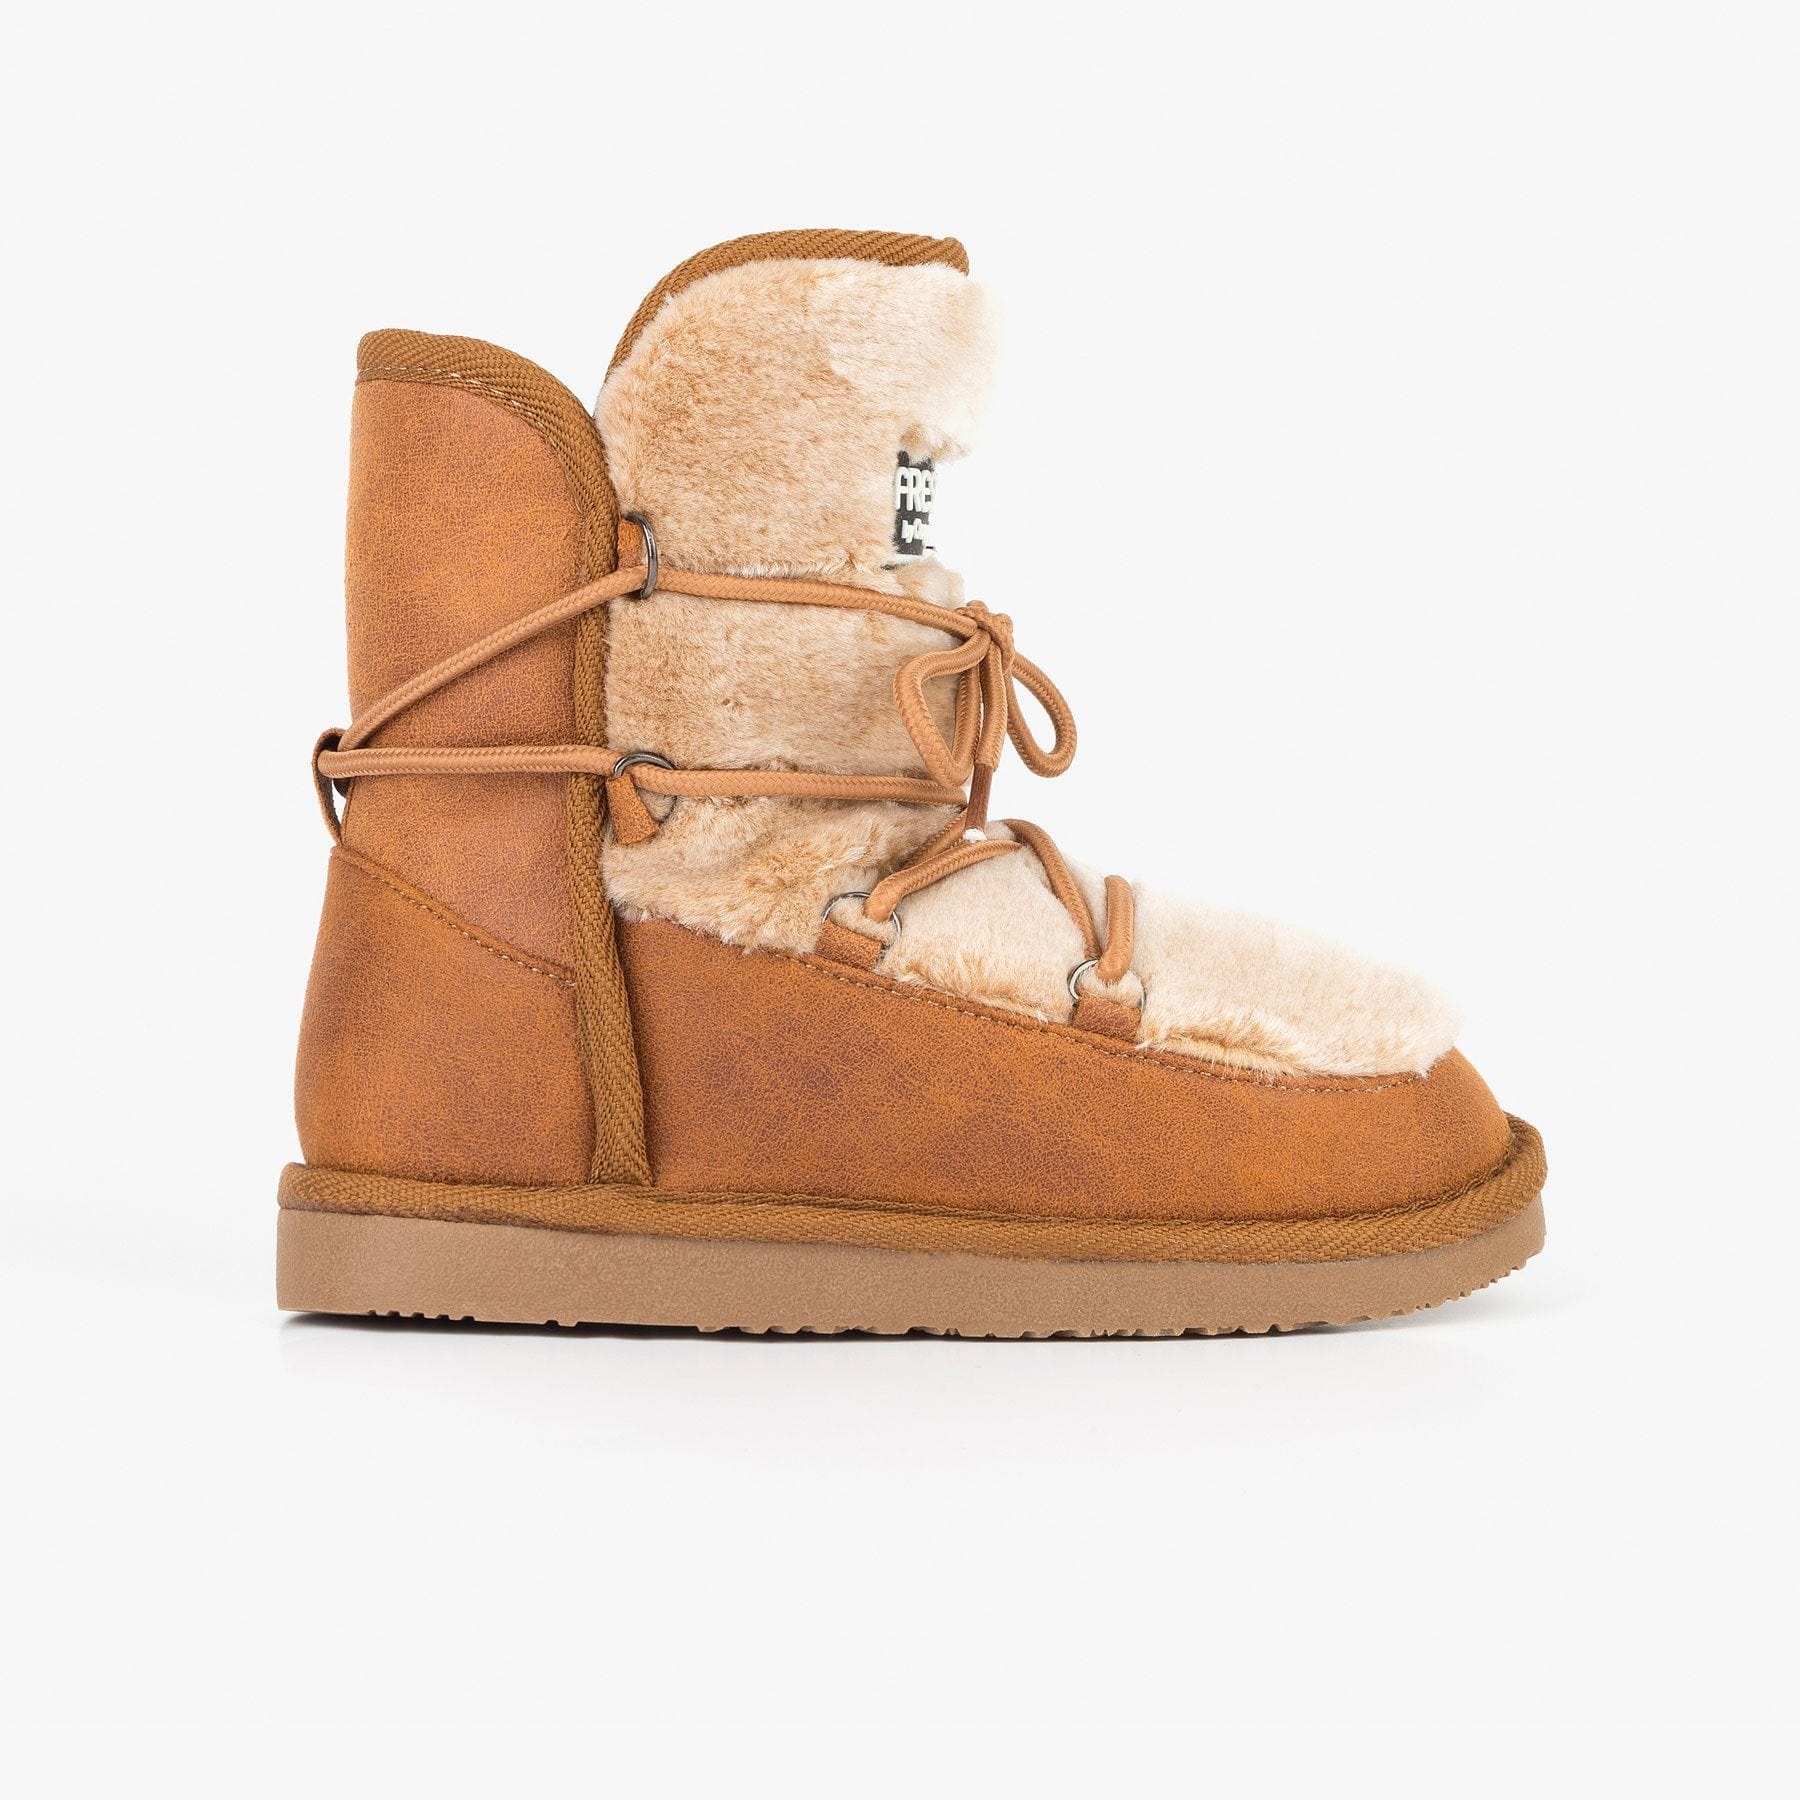 FRESAS CON NATA Shoes Girl's Camel Cords Australian Boots